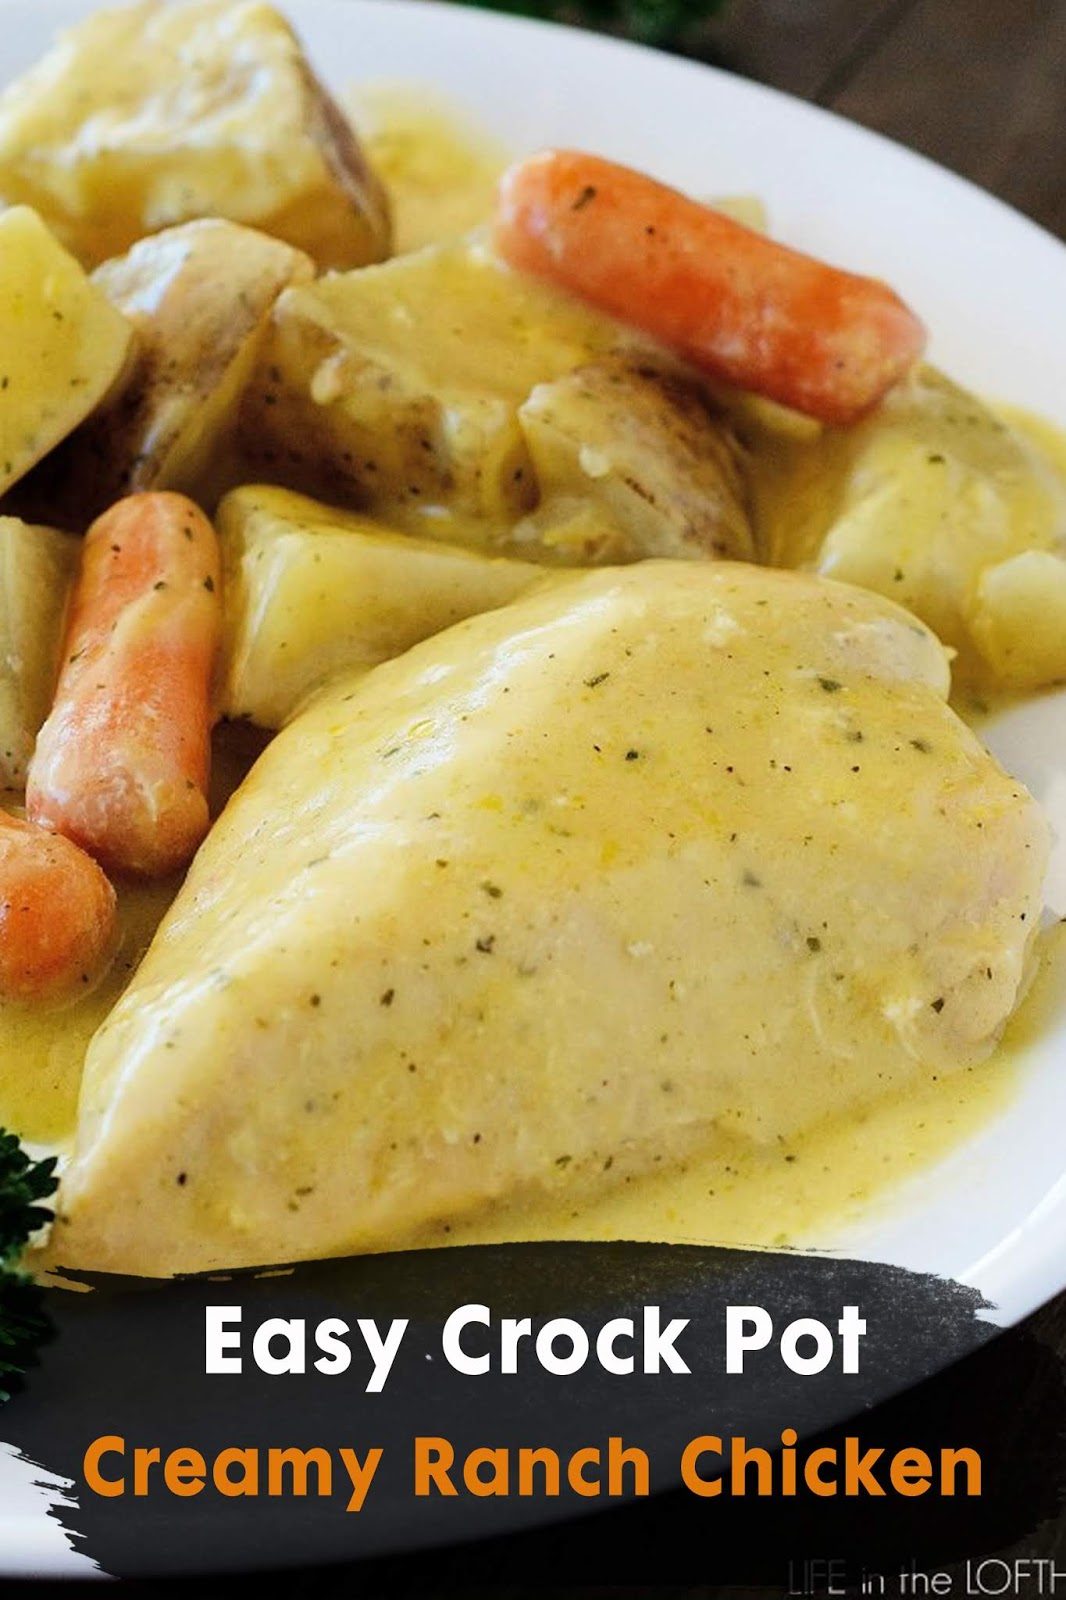 Easy Crock Pot Creamy Ranch Chicken - 3 SECONDS